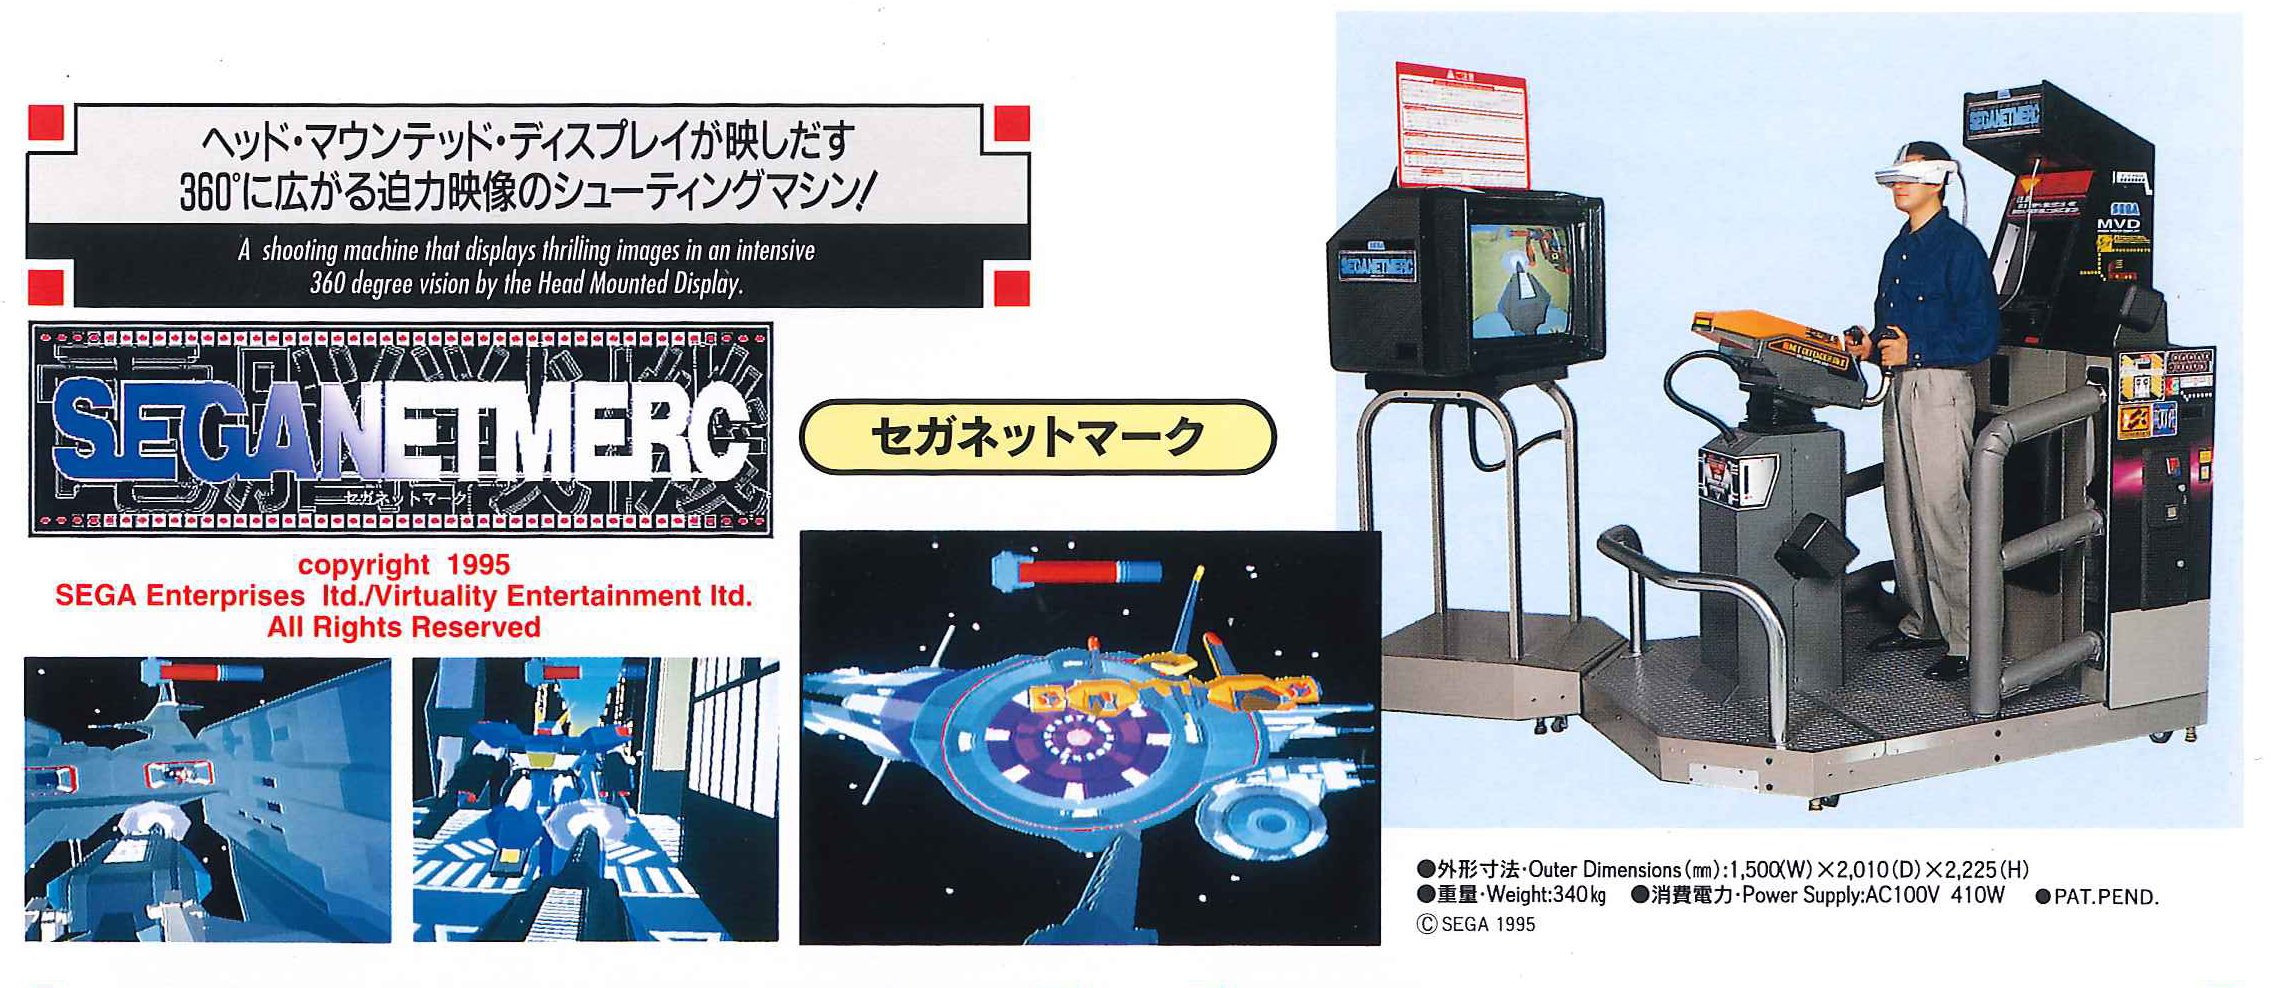 Sega Net Merc promo.jpg